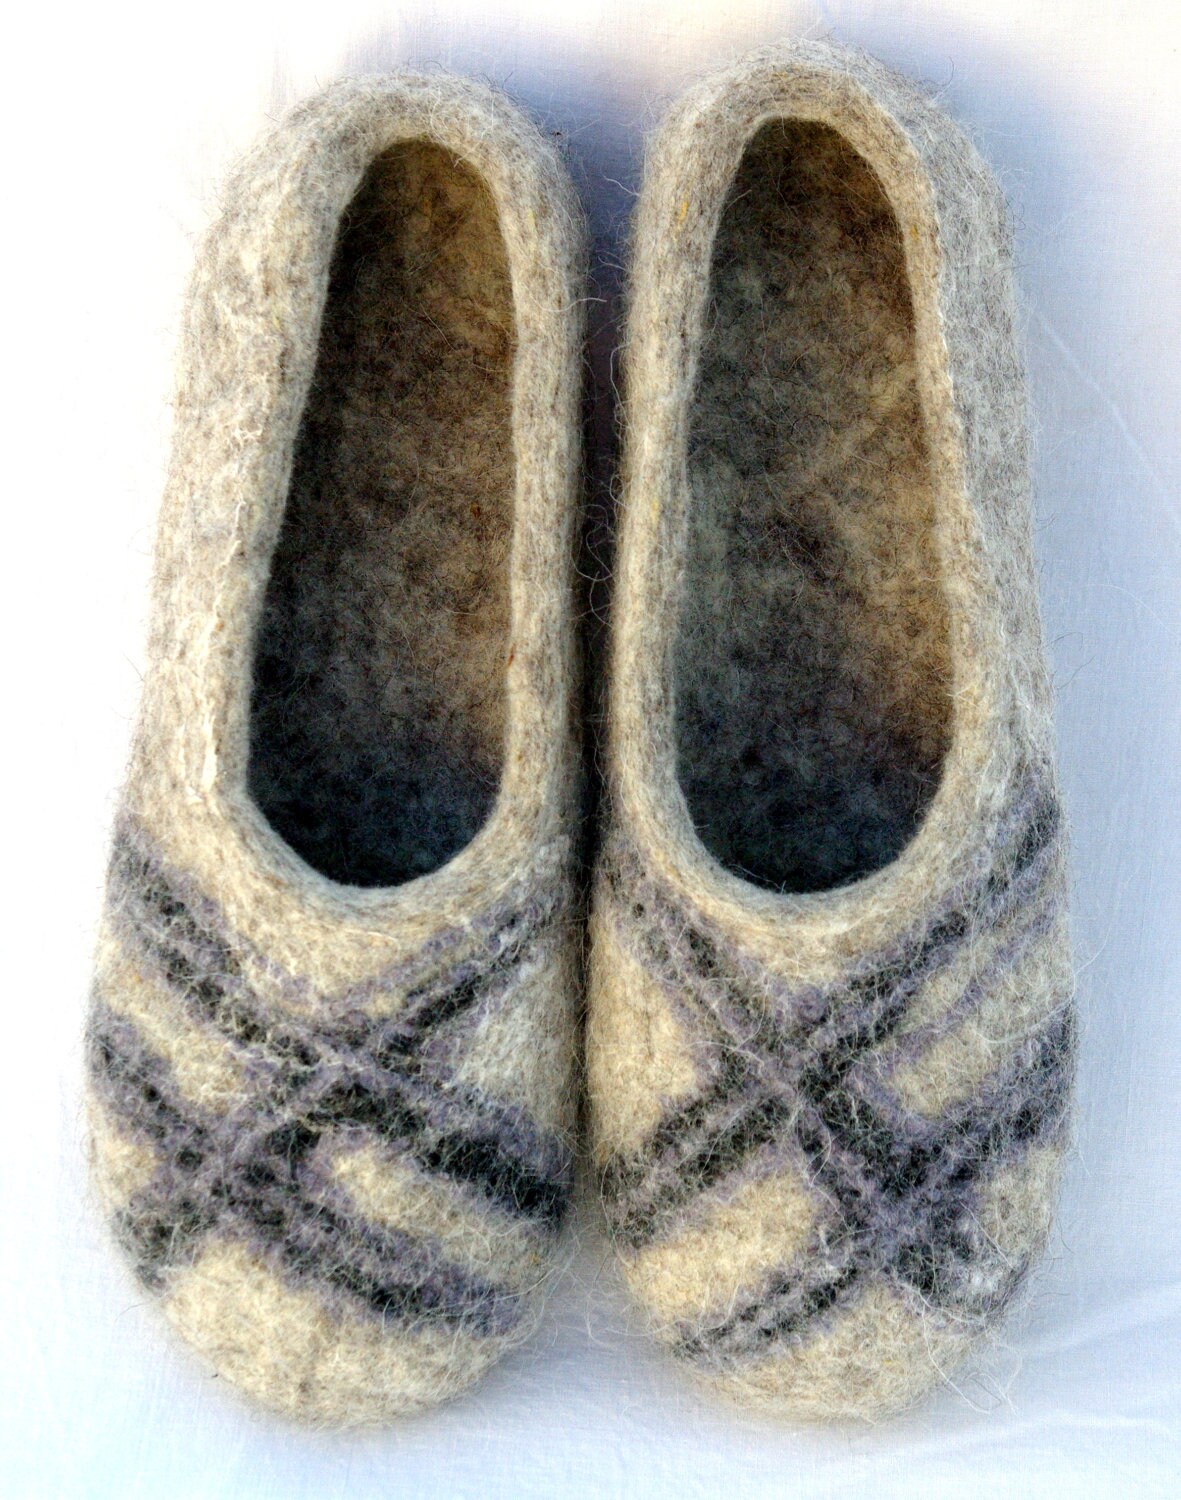 US 11.5 Felt  Size size Ecological slippers  Woollen UK 10.5/11 Slippers for 15 men Men  Handmade